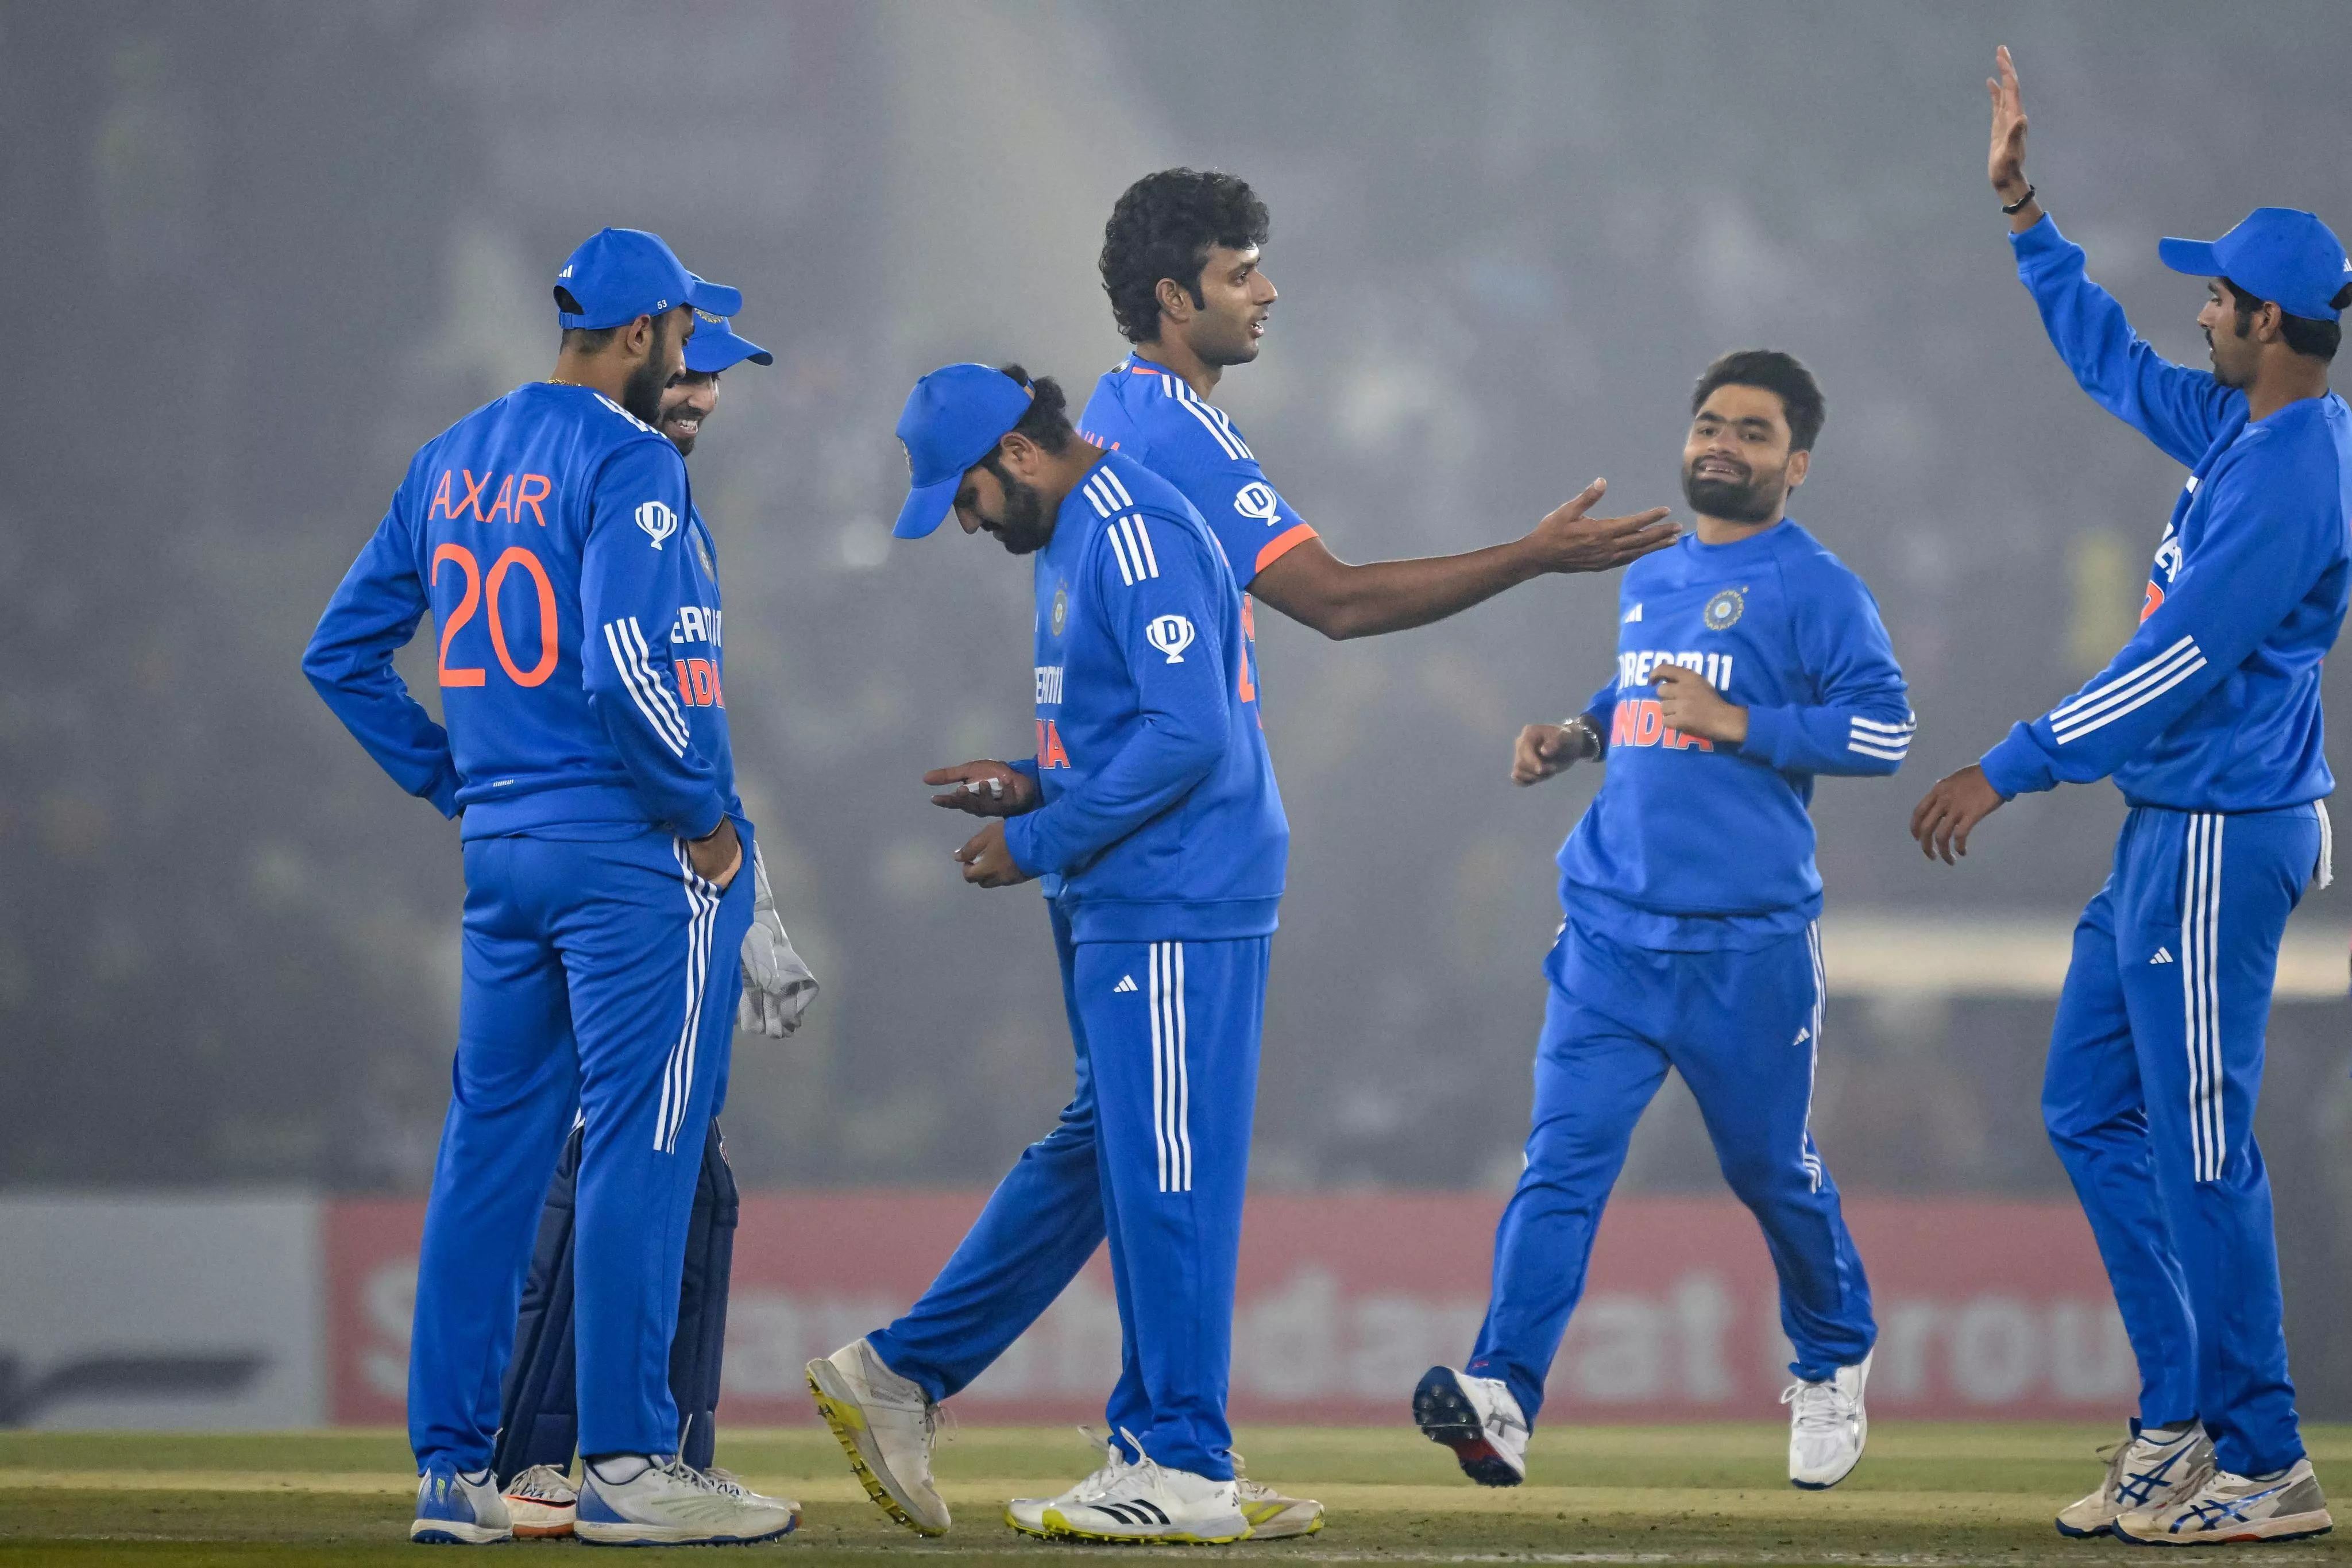 IND Vs AFG 1st T20 : अफगानिस्तान ने भारत को जीत के लिए दिया 159 रनों का लक्ष्य